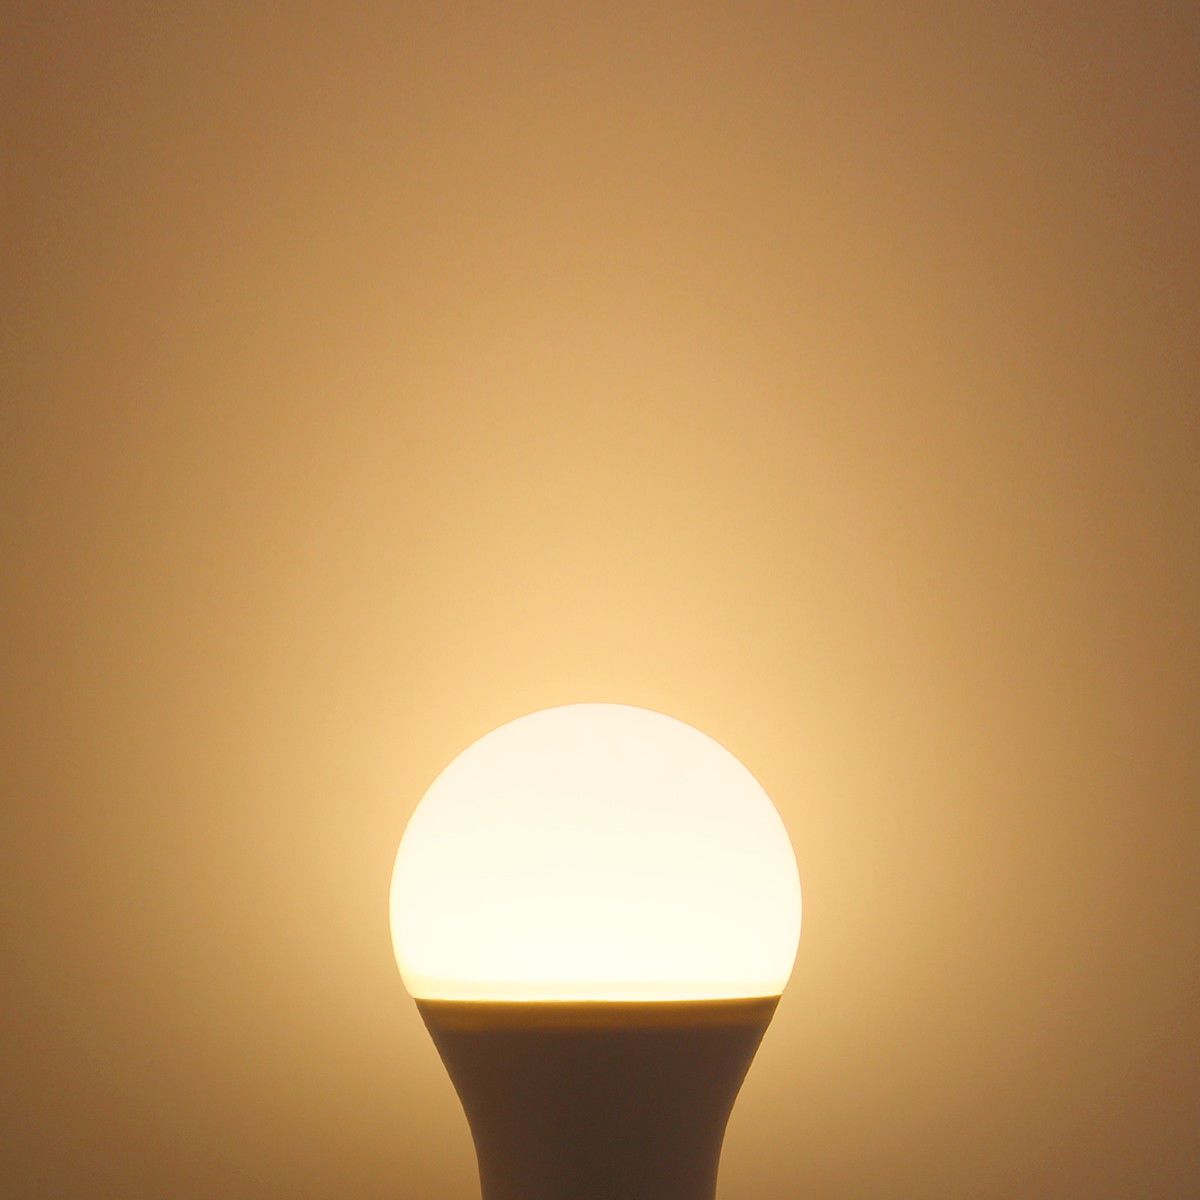 G.W.S LED Wholesale LED Bulbs E27 / 9W / Warm White (3200K) E27 Edison LED Globe Light Bulb